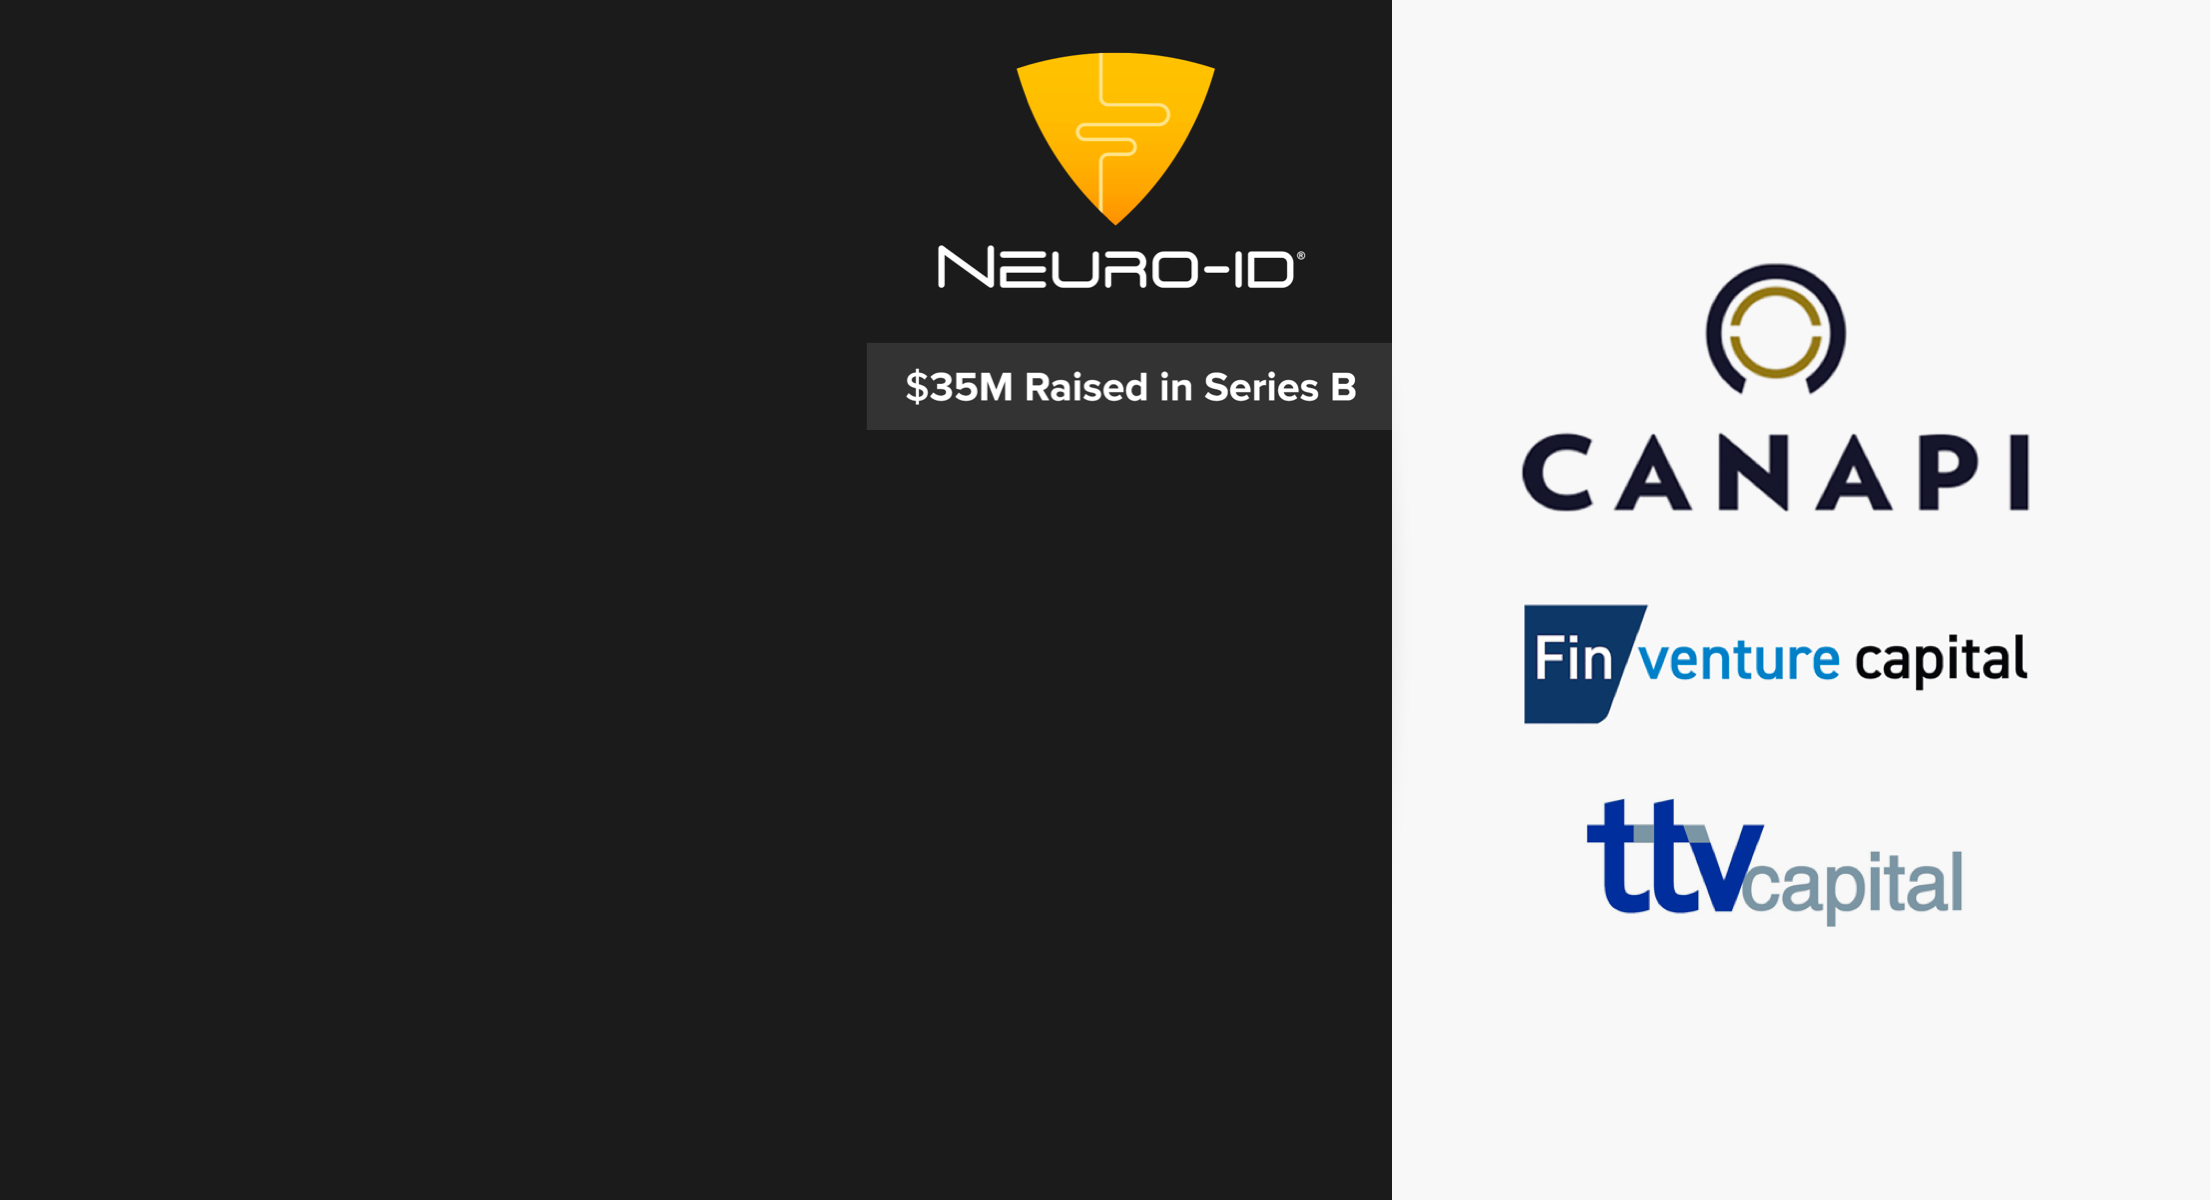 Neuro-ID Secures $35M in Series B Funding